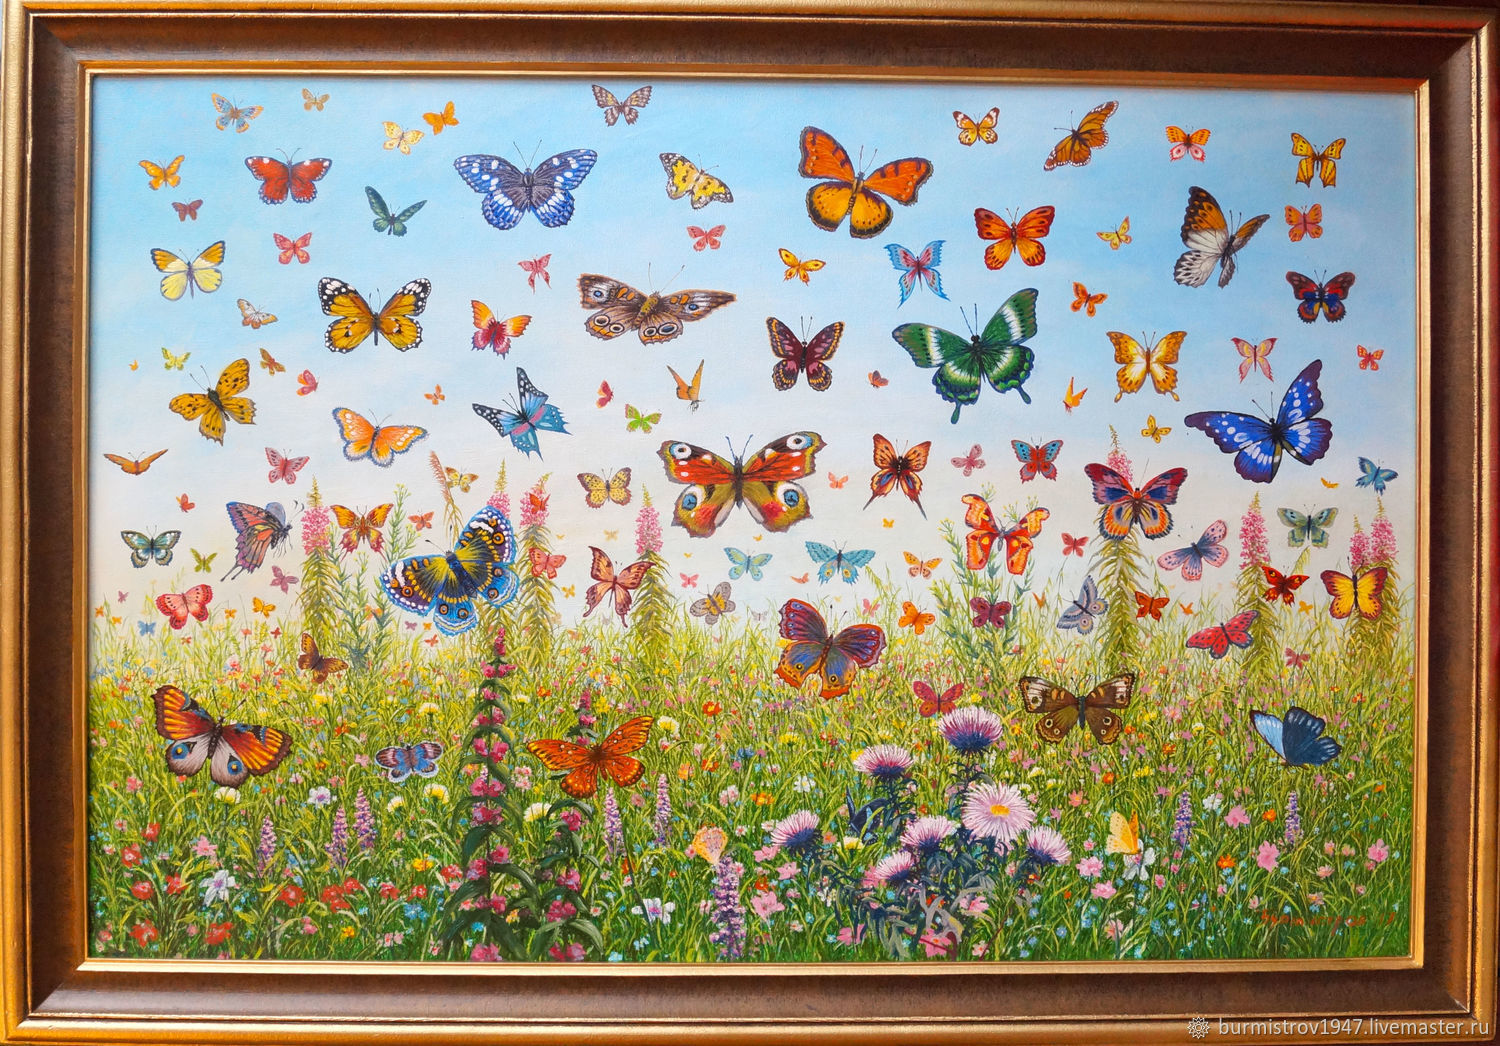 Про лета бабочка. Много бабочек. Поляна с цветами и бабочками. Разноцветные бабочки. Множество бабочек.